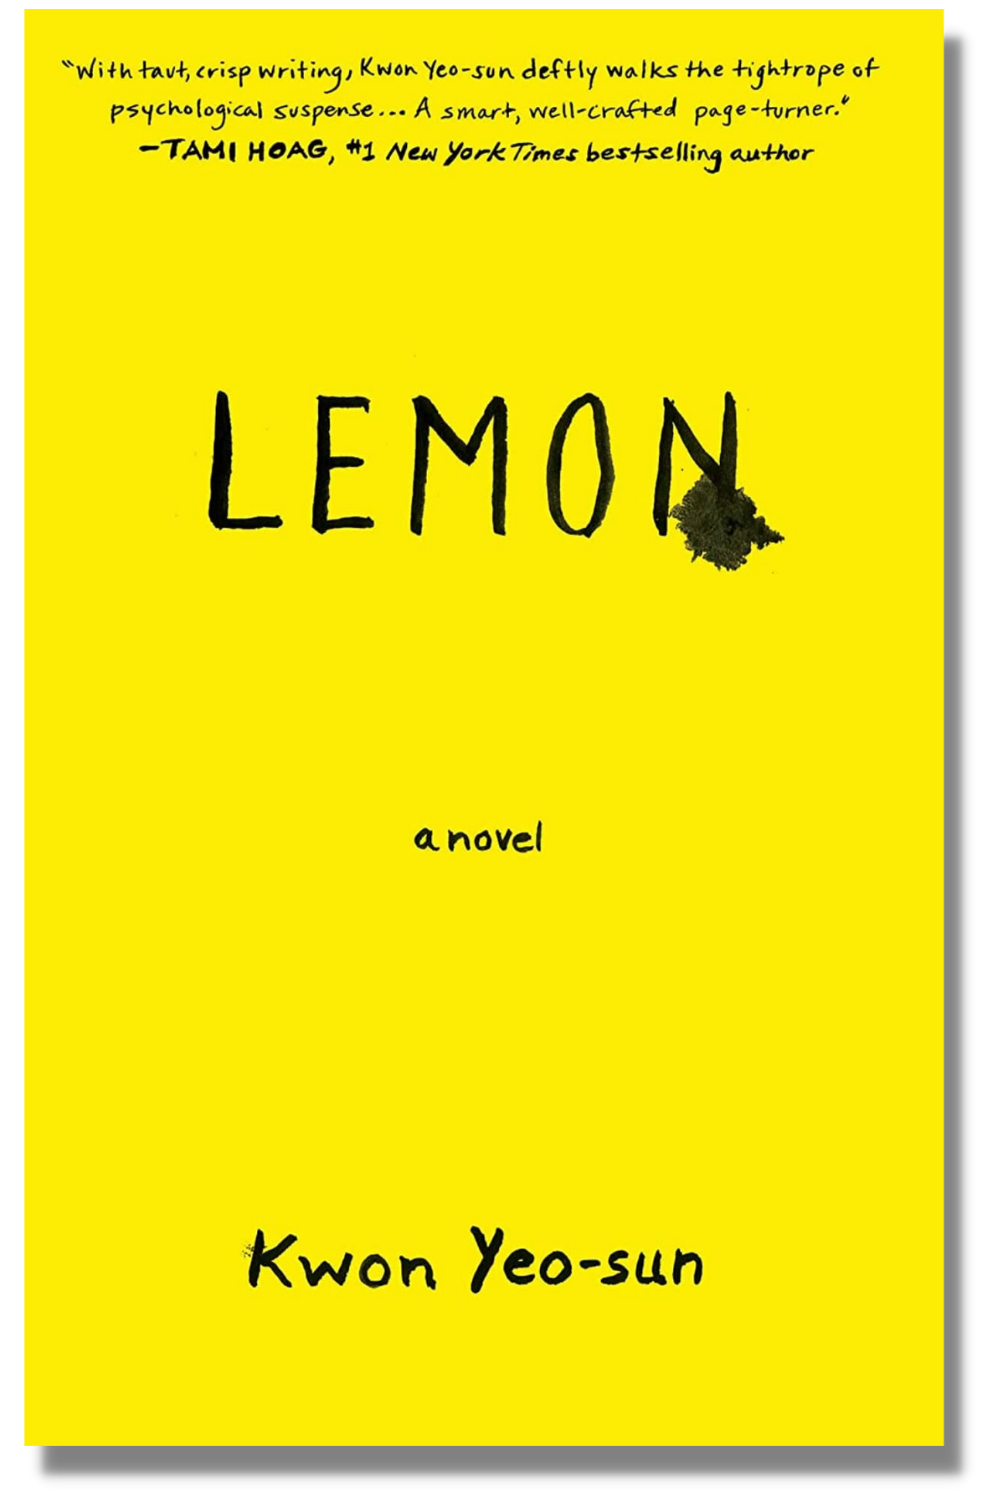 The cover of "Lemon"